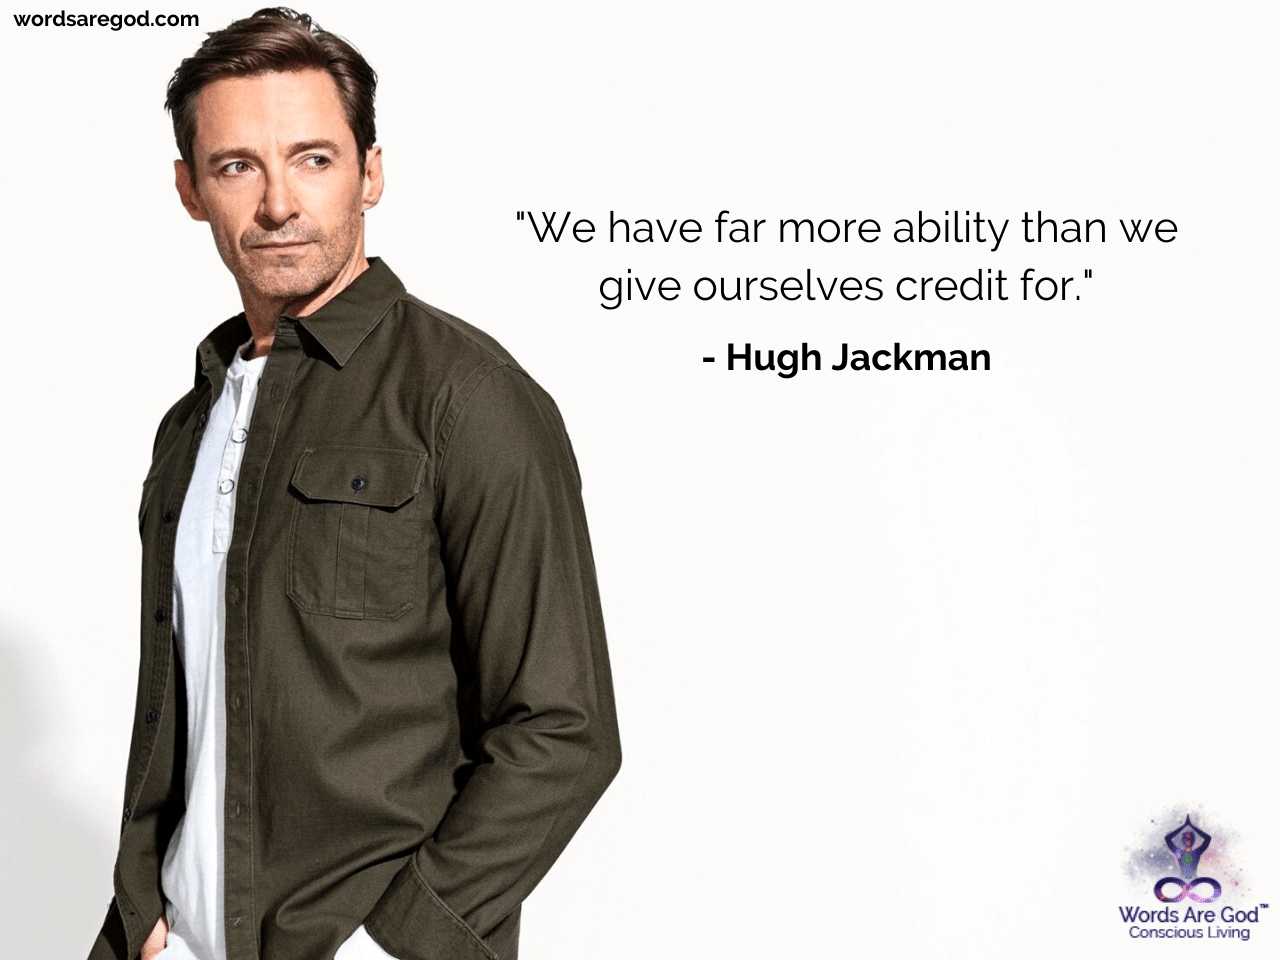 Hugh Jackman Inspirational Quotes